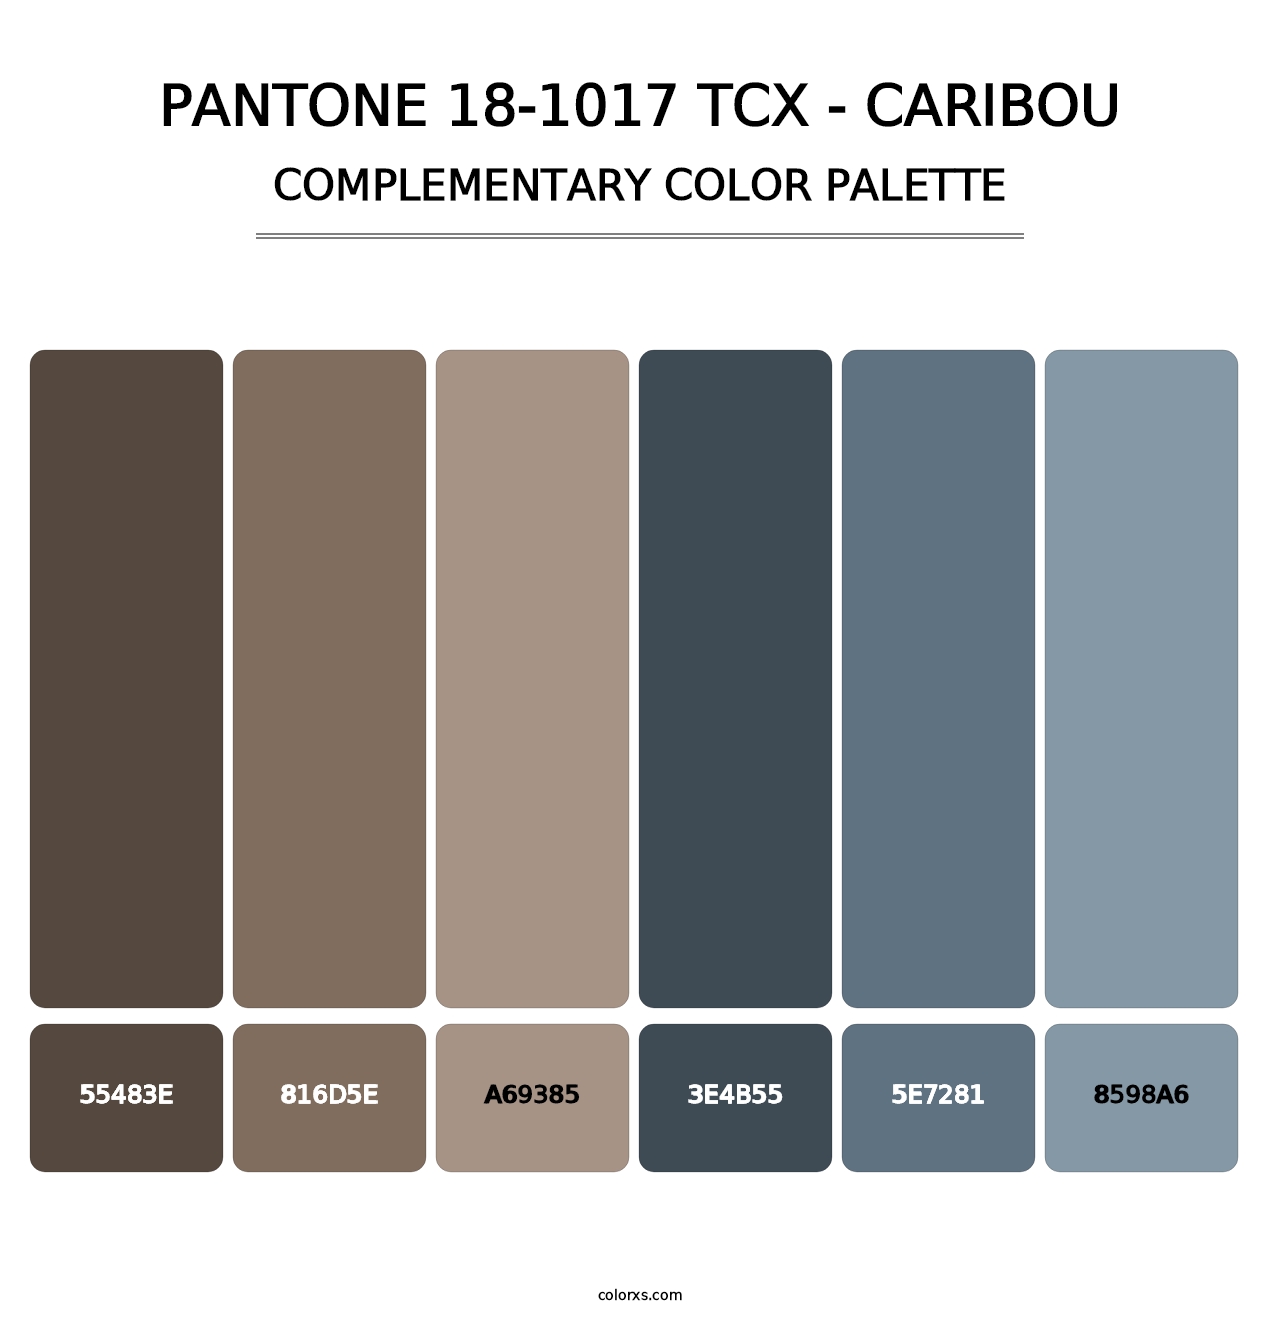 PANTONE 18-1017 TCX - Caribou - Complementary Color Palette